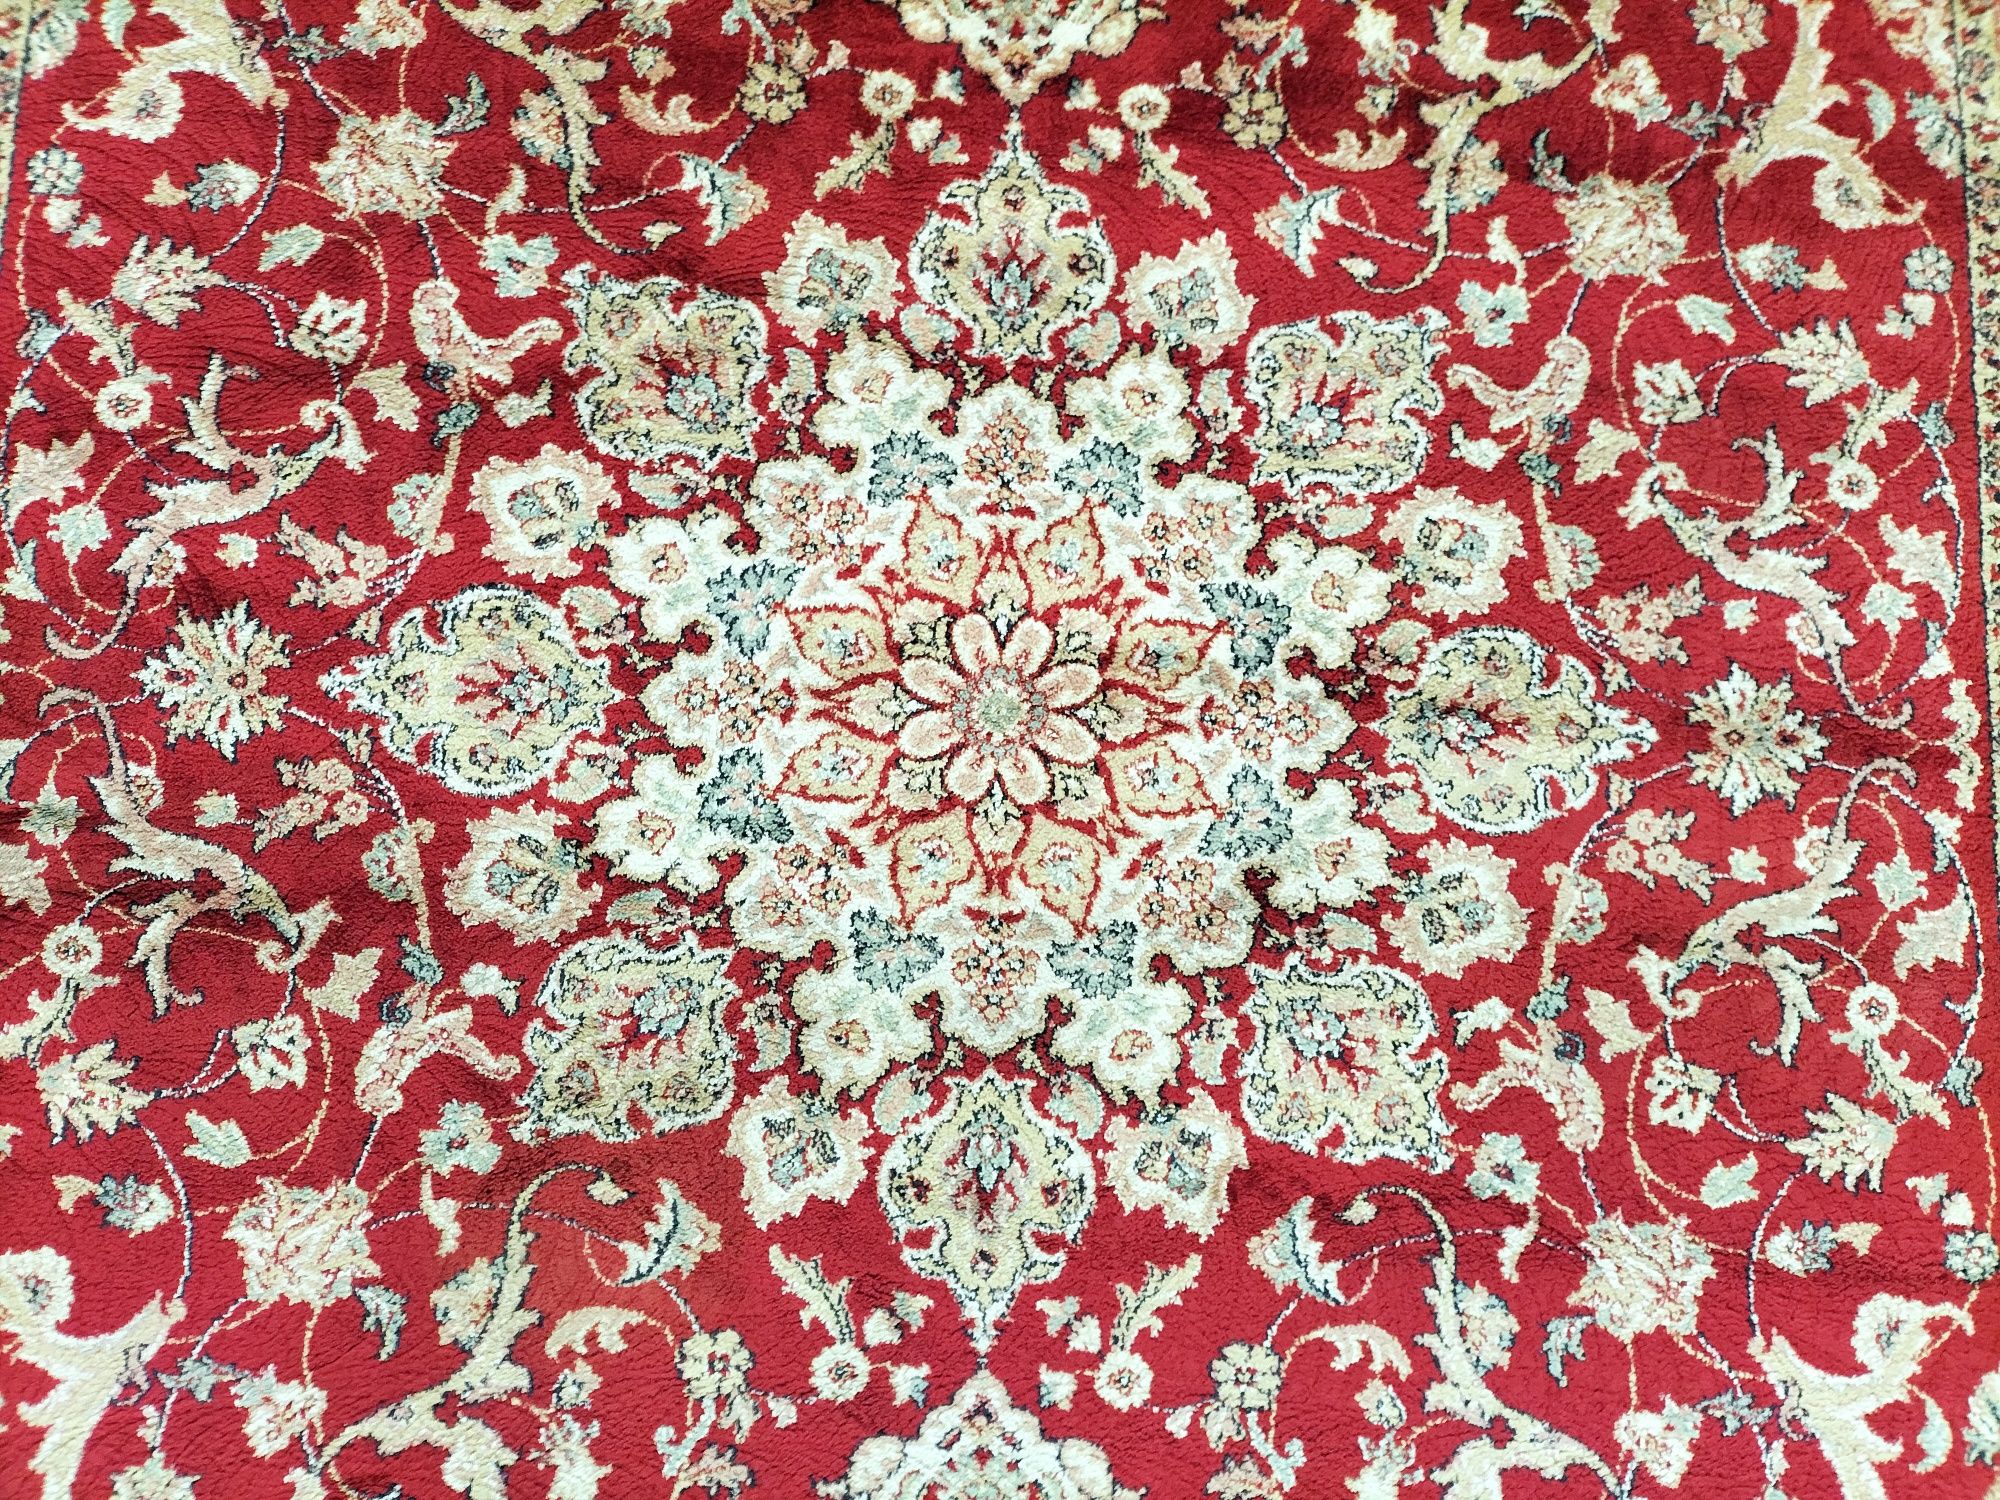 Piękny orientalny dywan Isfahan 200x300cm